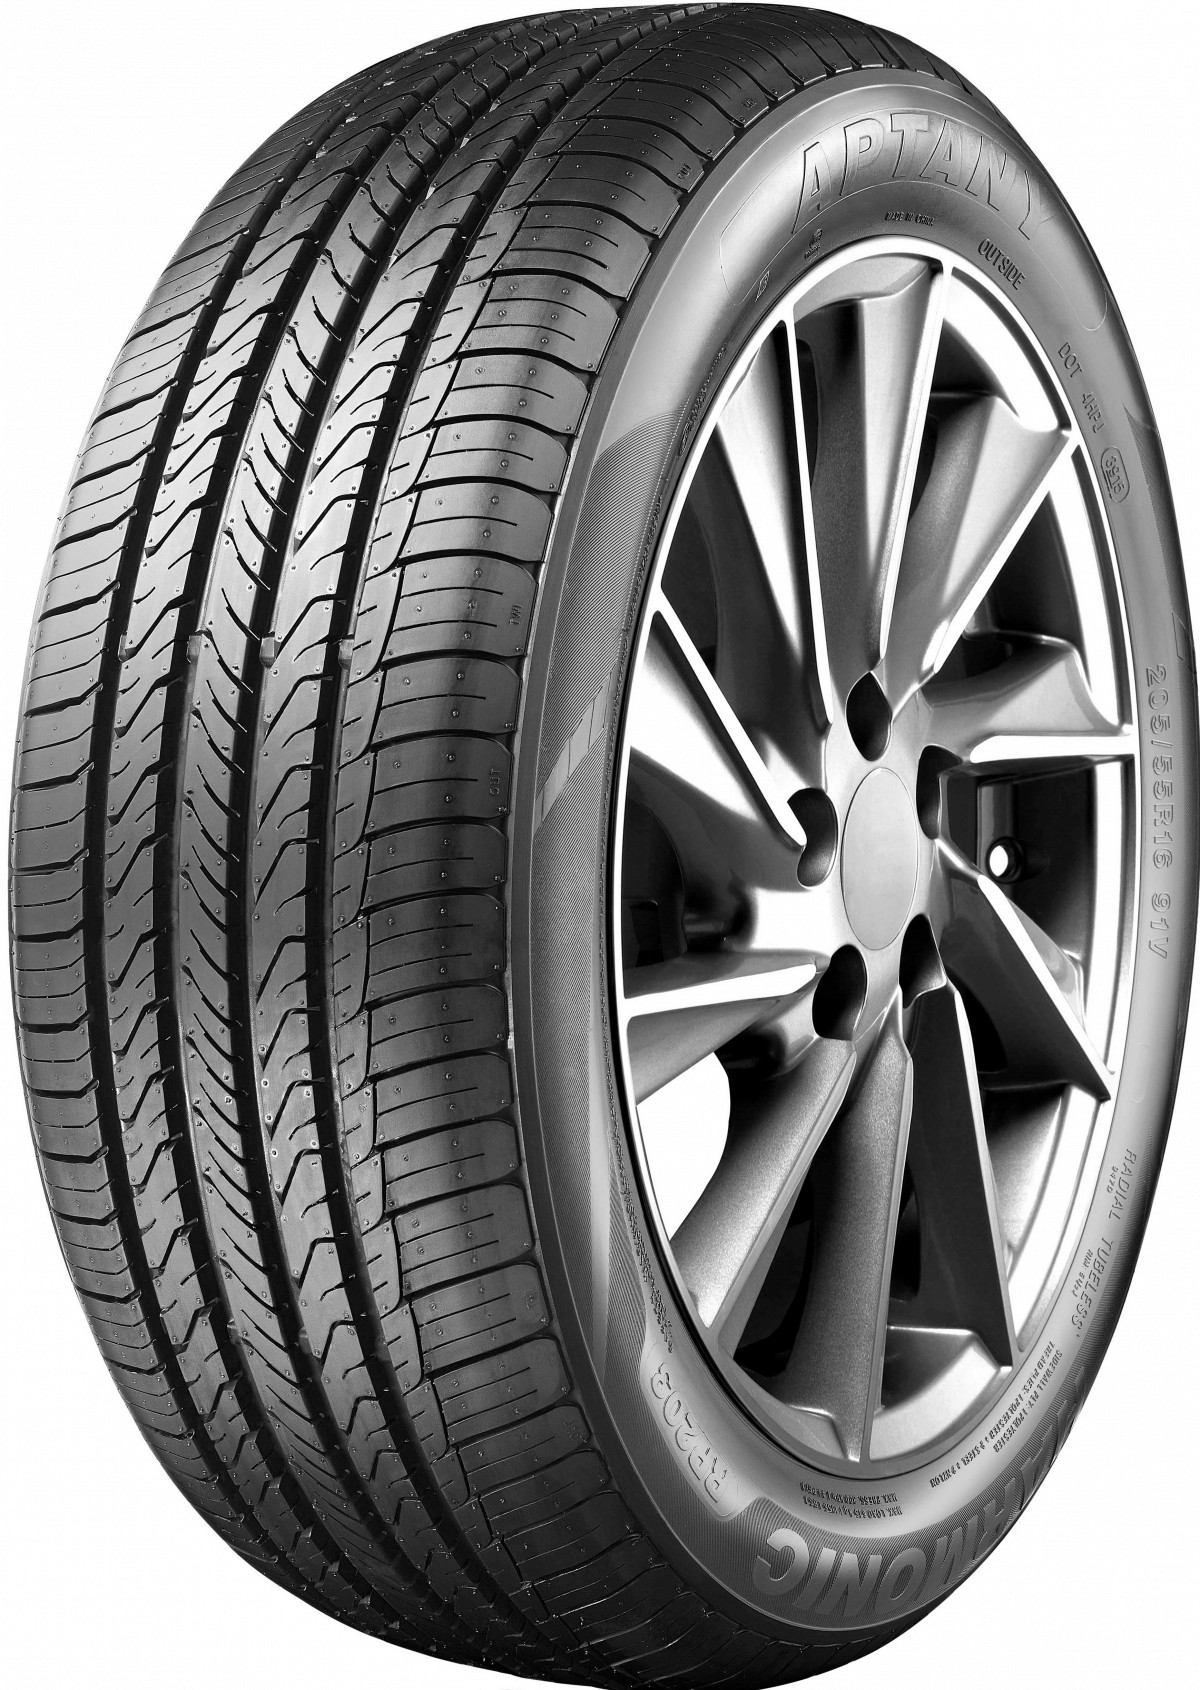 RP203 Aptany EAN:6950306346040 Car tyres